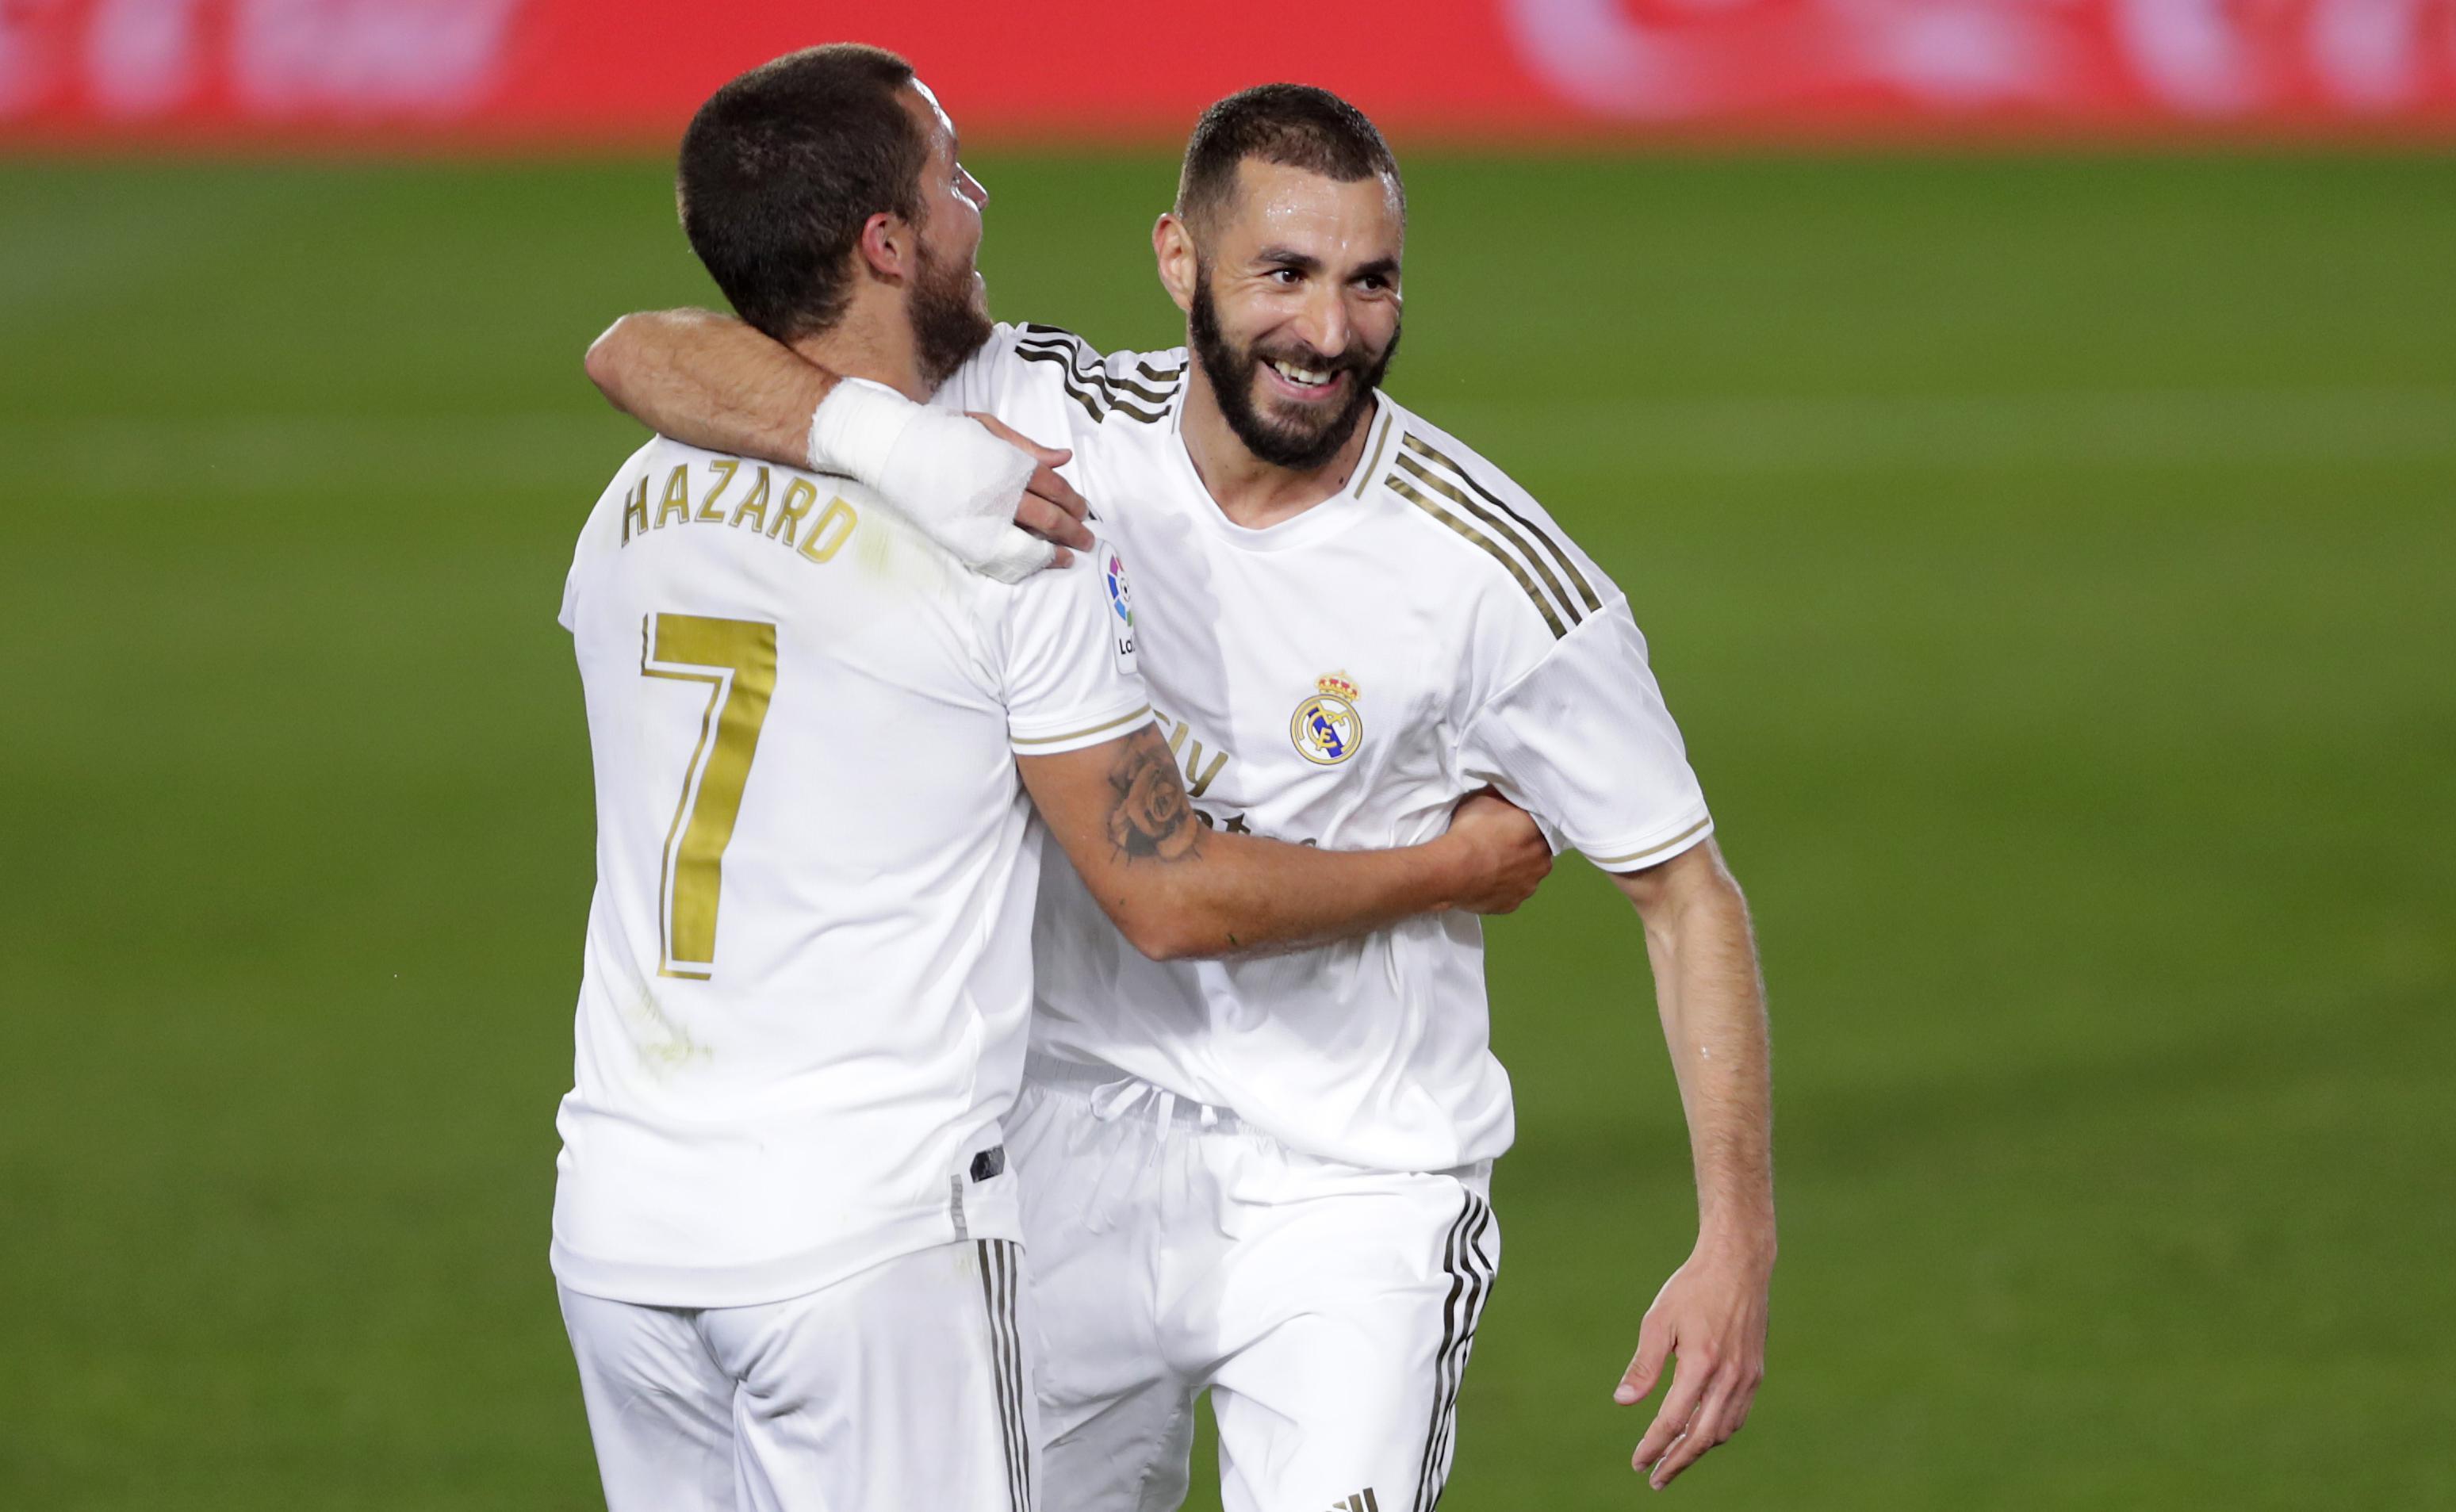 (ÖZET) Real Madrid - Valencia maç sonucu: 3-0